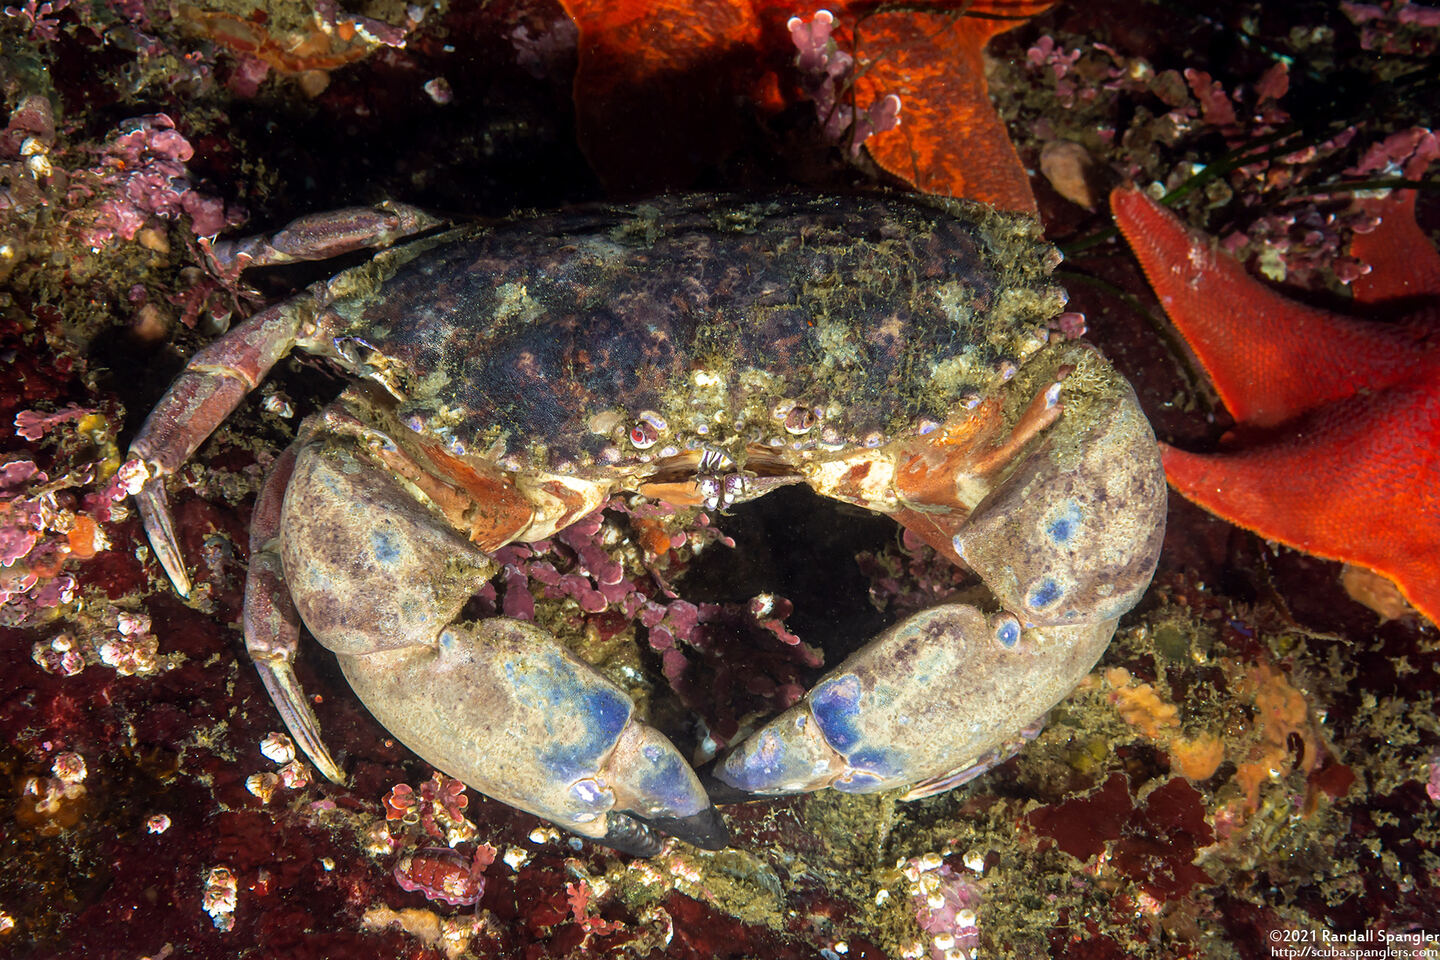 Romaleon antennarium (Pacific Rock Crab)